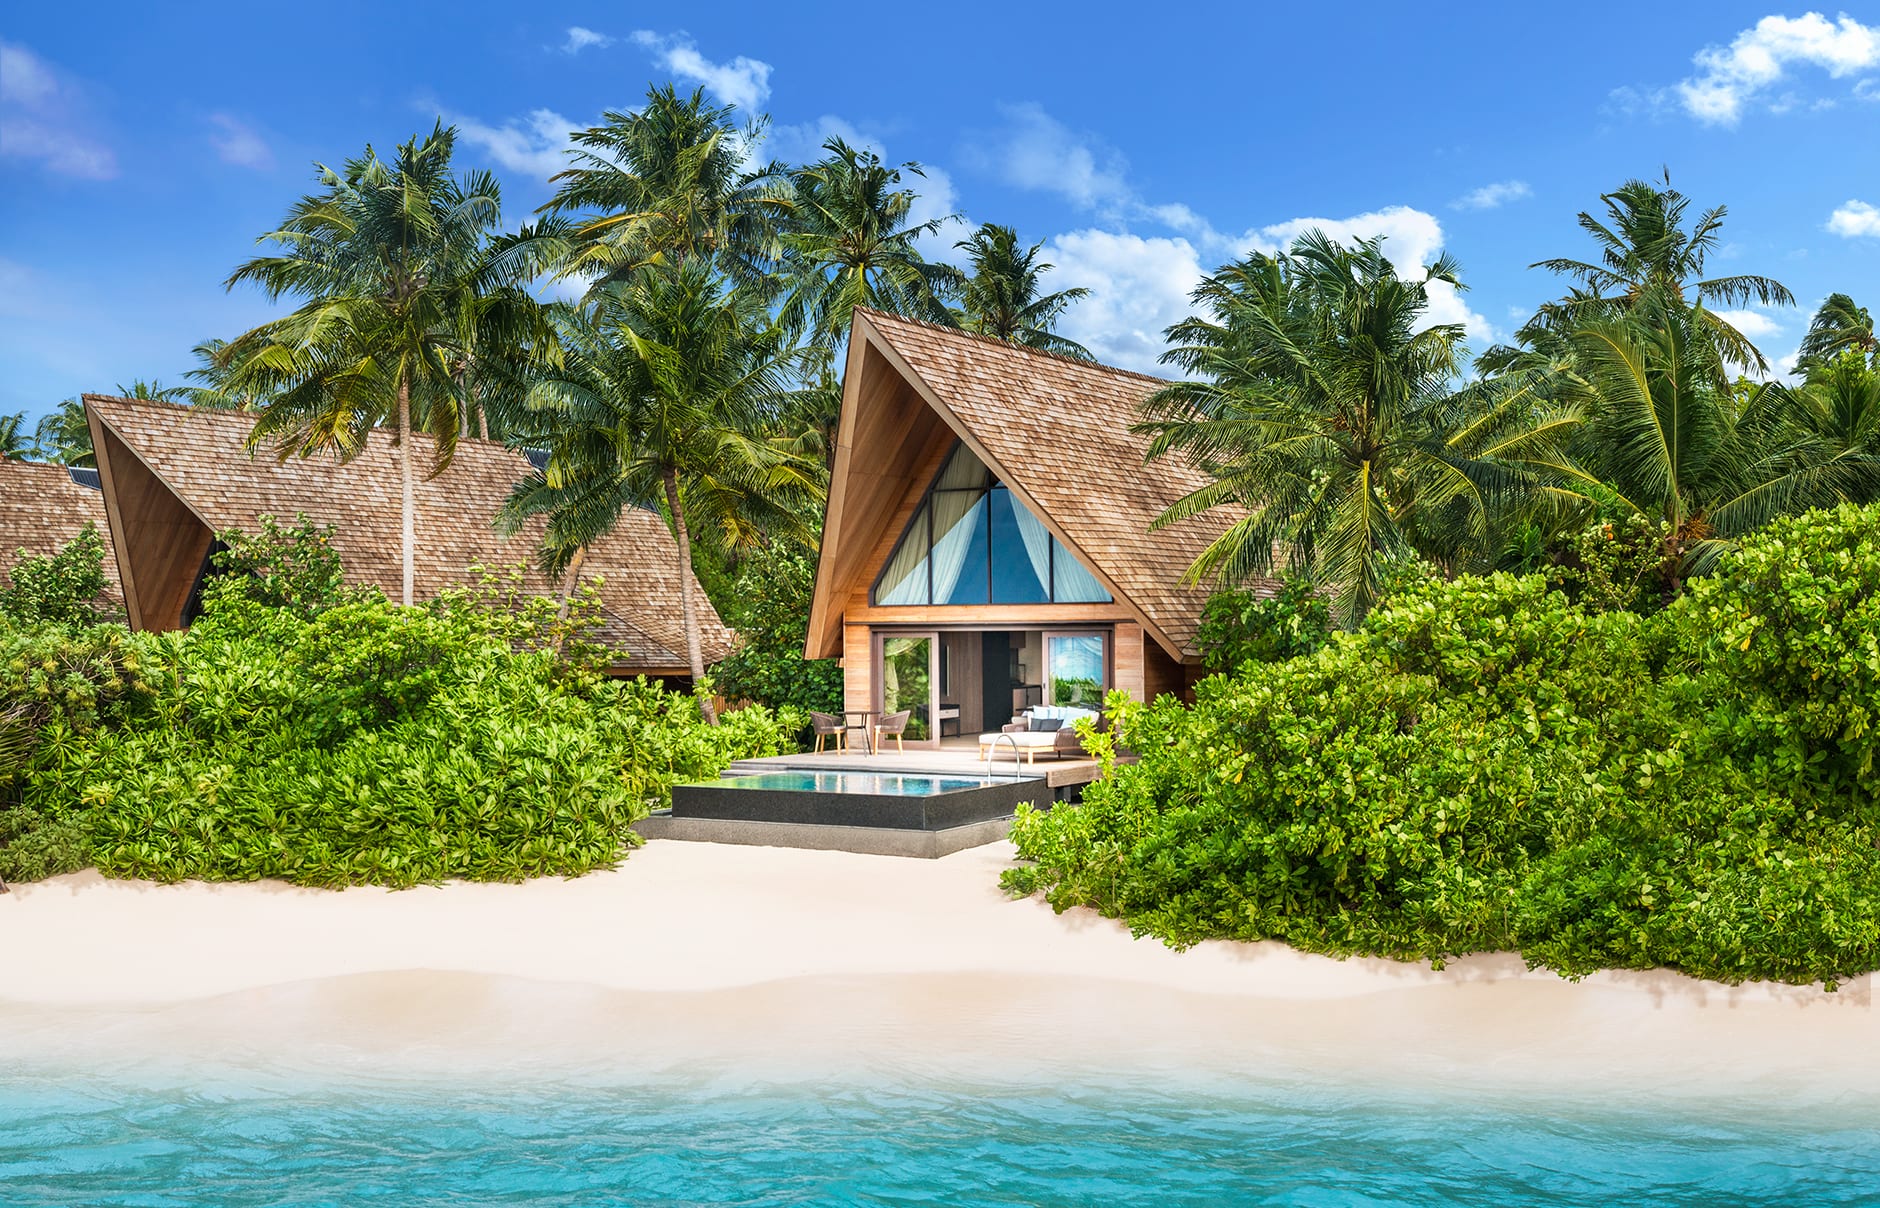 The St. Regis Maldives Vommuli Resort, Maldives. Hotel Review by TravelPlusStyle. Photo © Marriott International